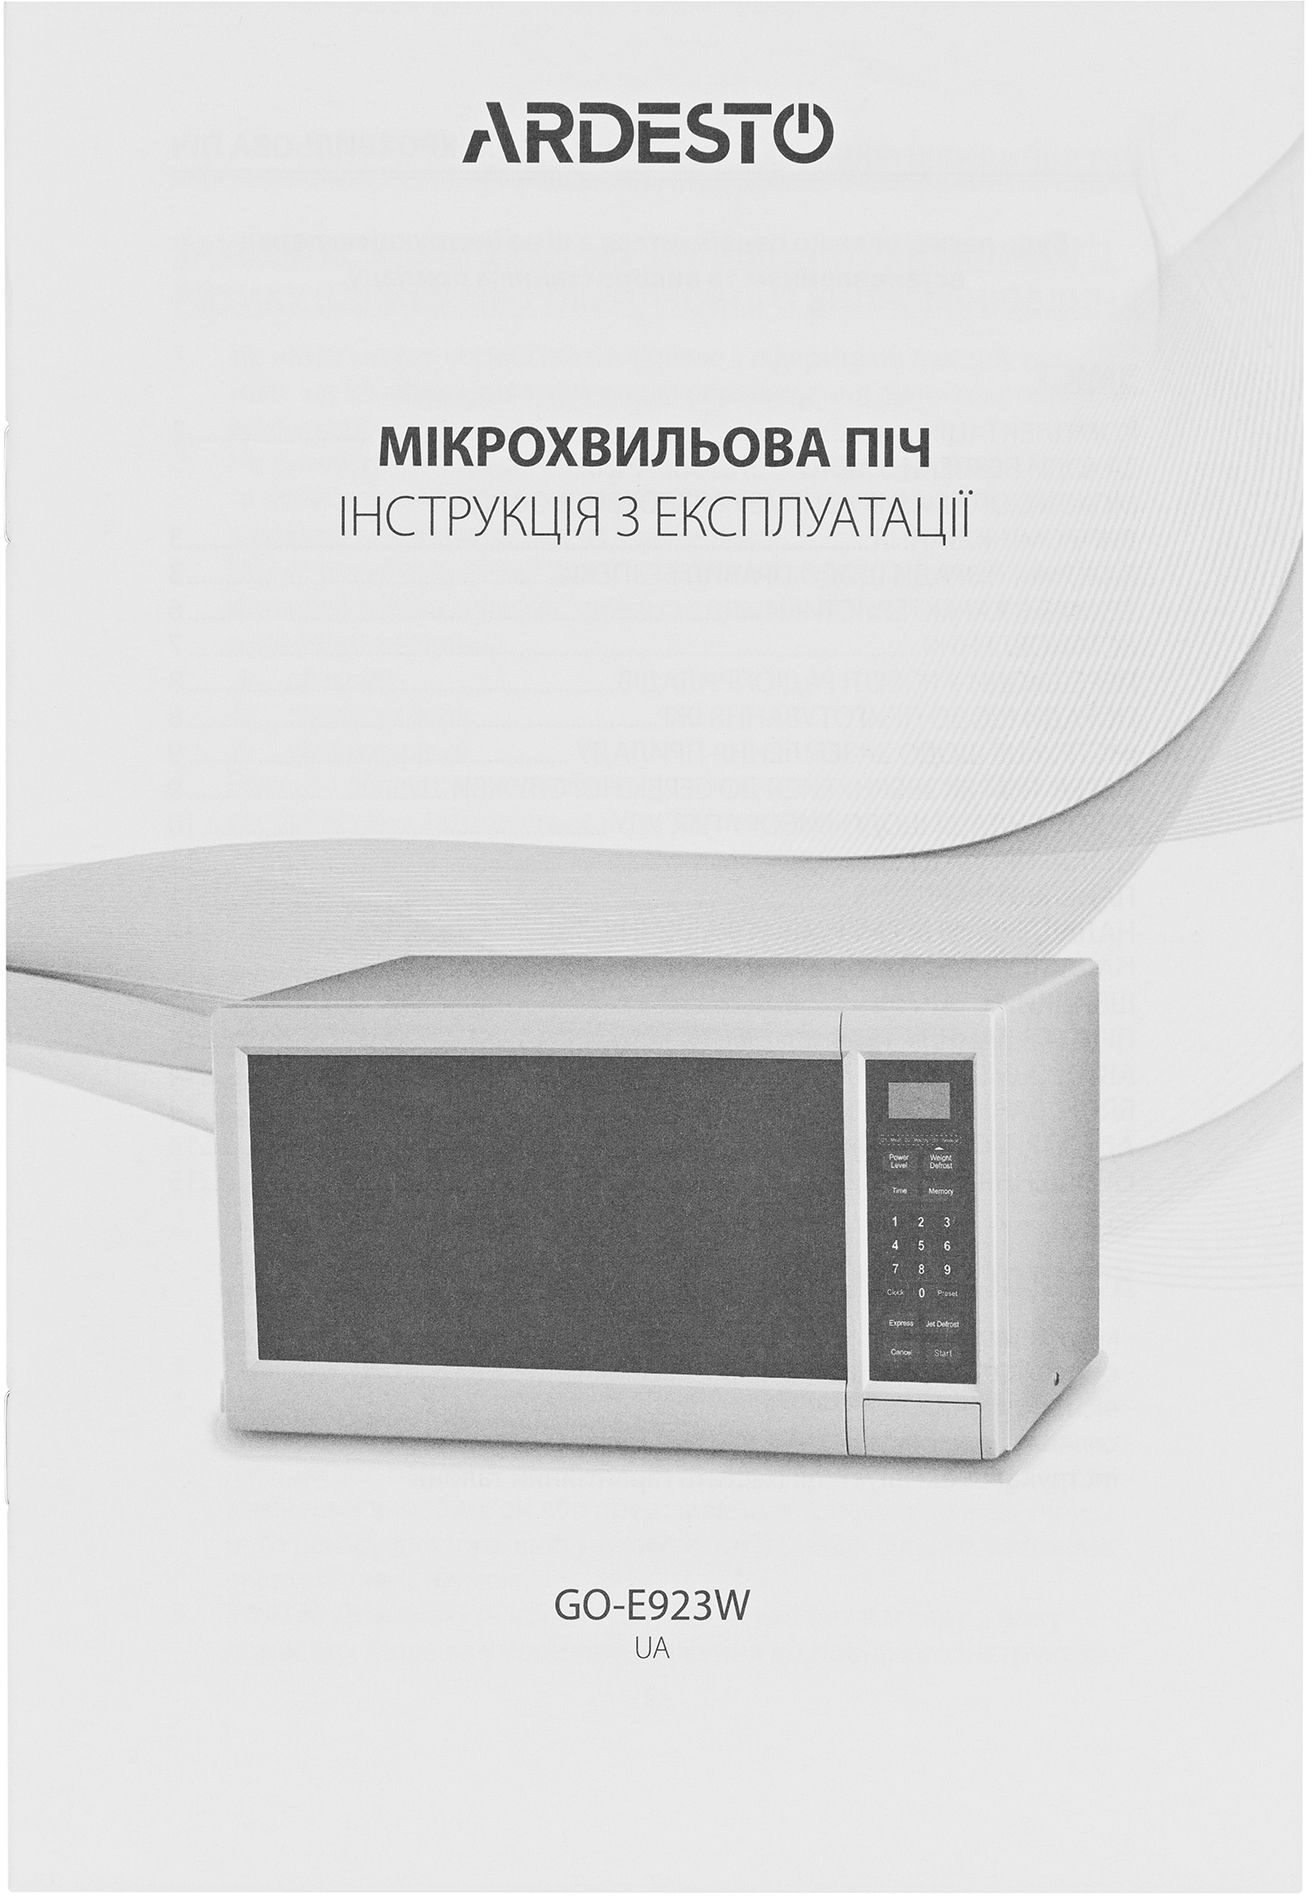 Микроволновая печь Ardesto GO-E923W отзывы - изображения 5